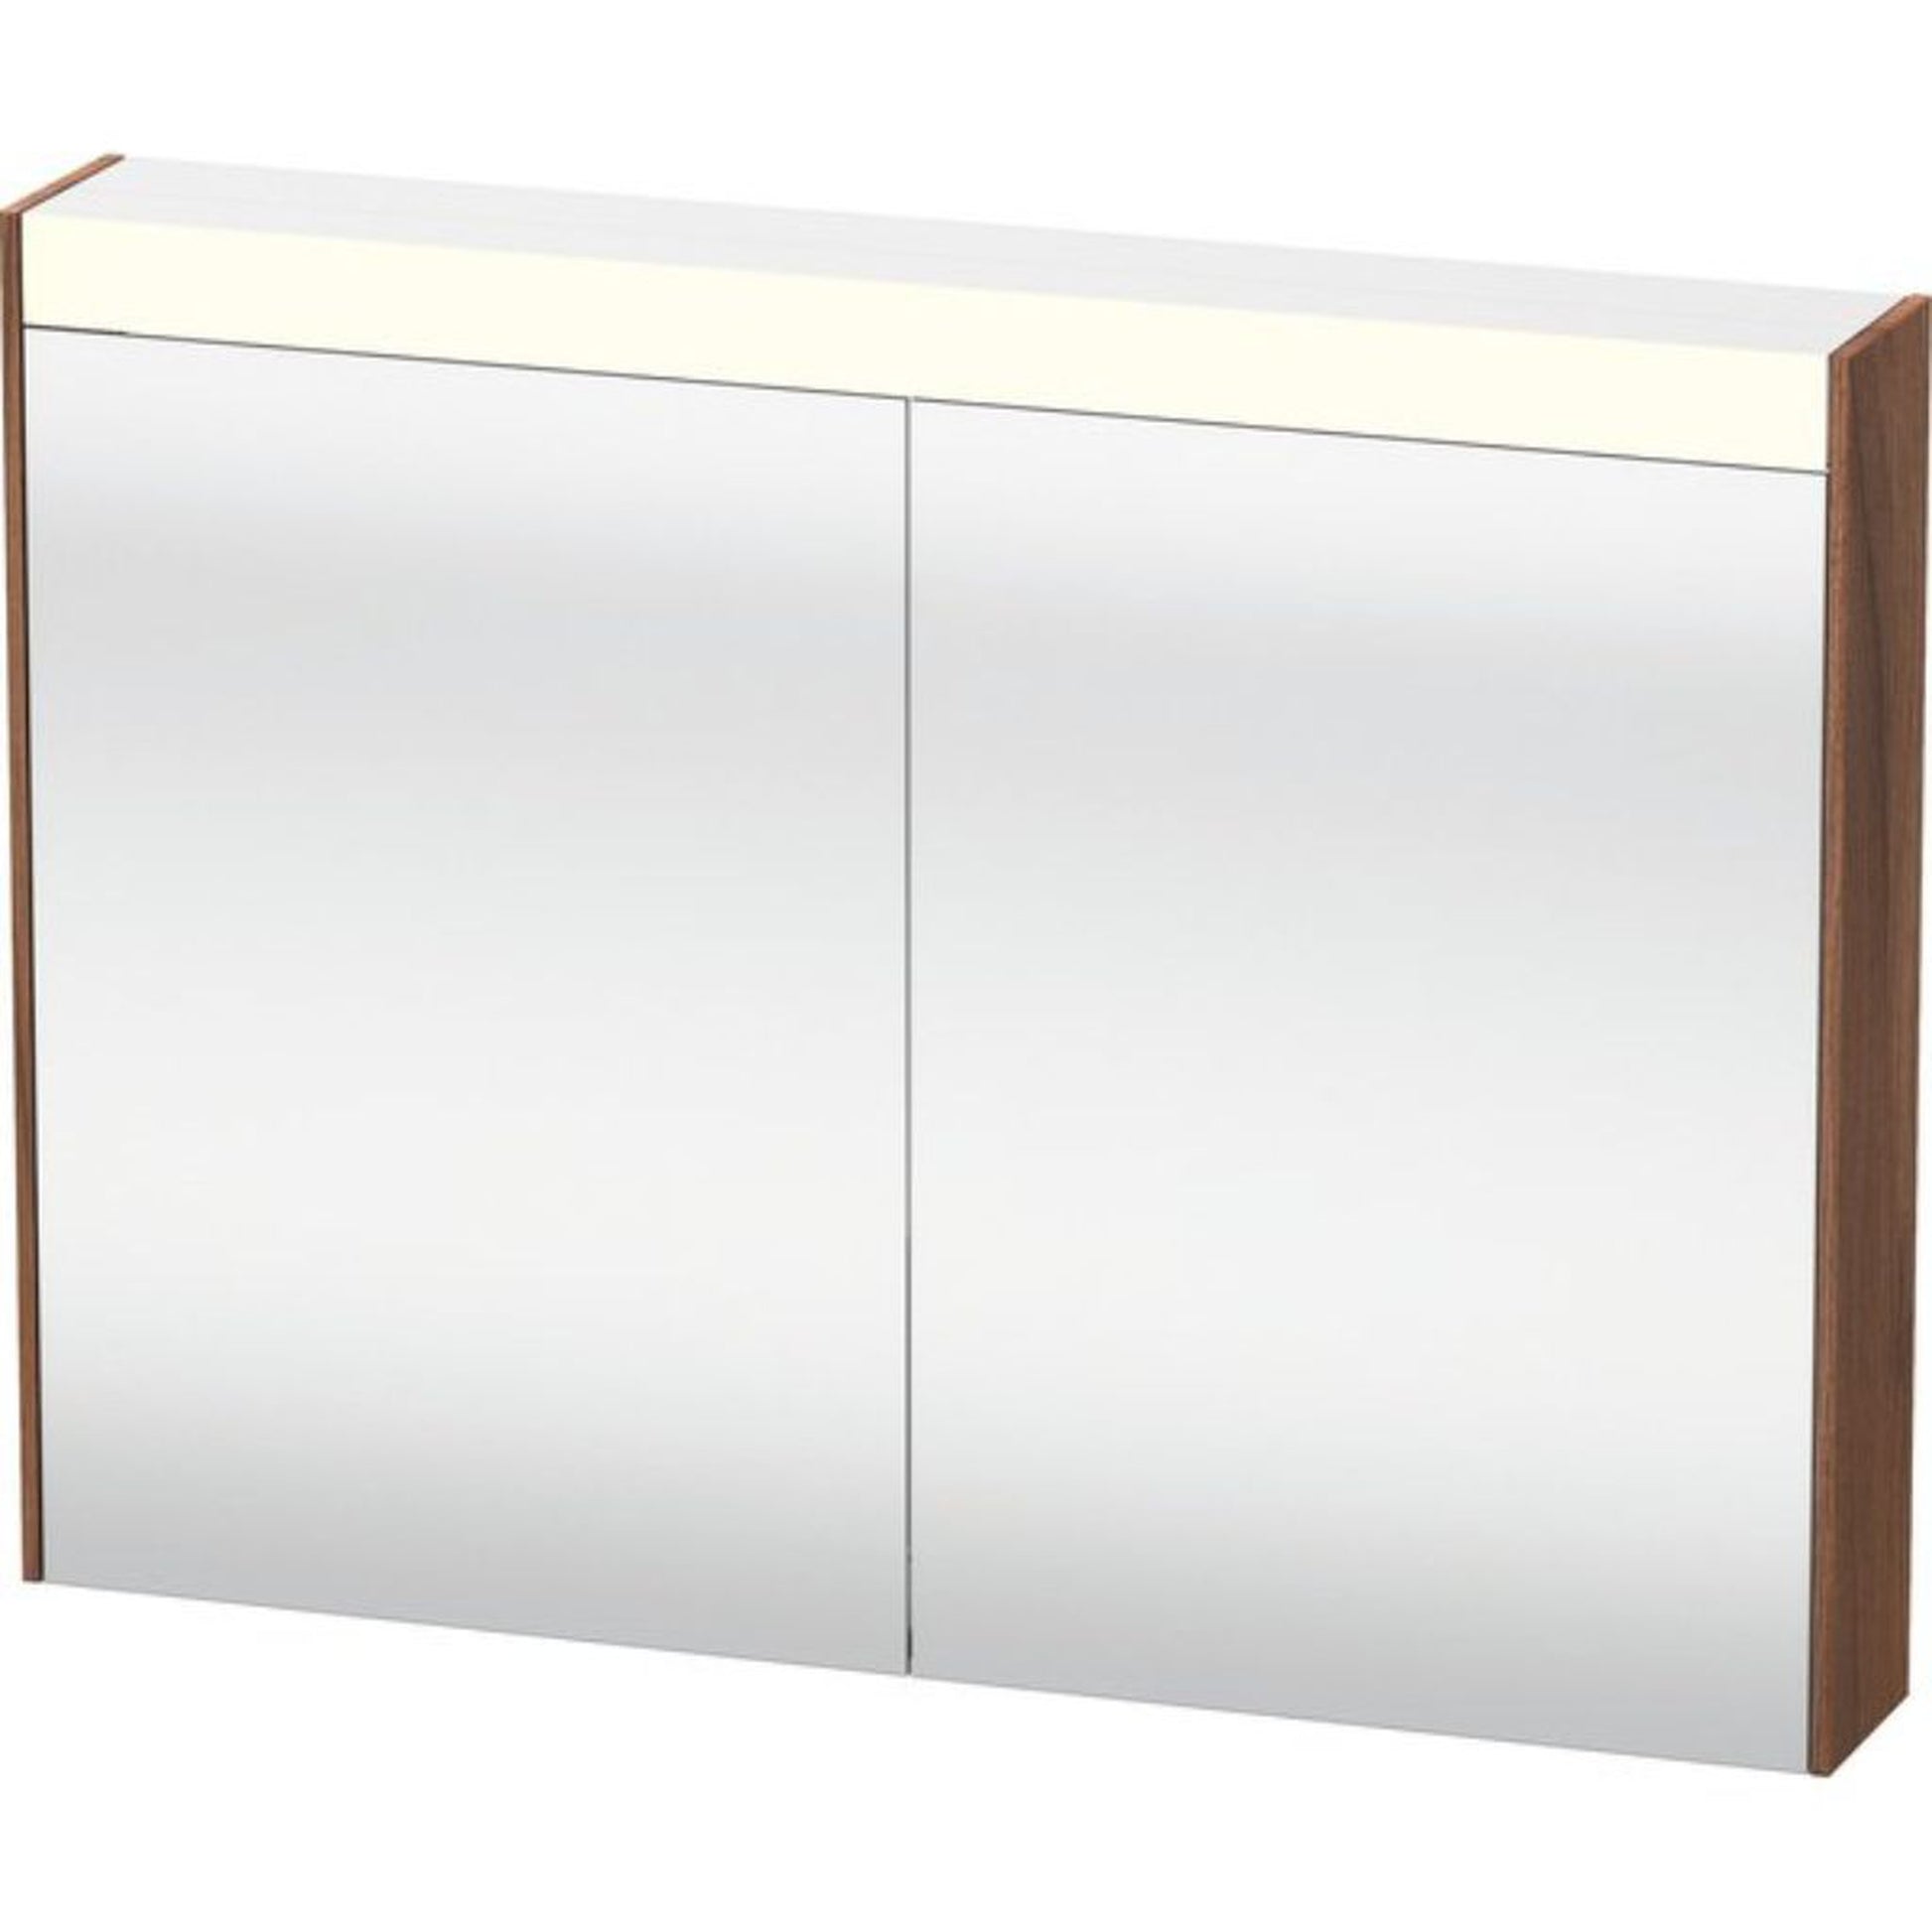 Duravit Brioso 32" x 30" x 6" Mirror Cabinet With Lighting Natural Walnut